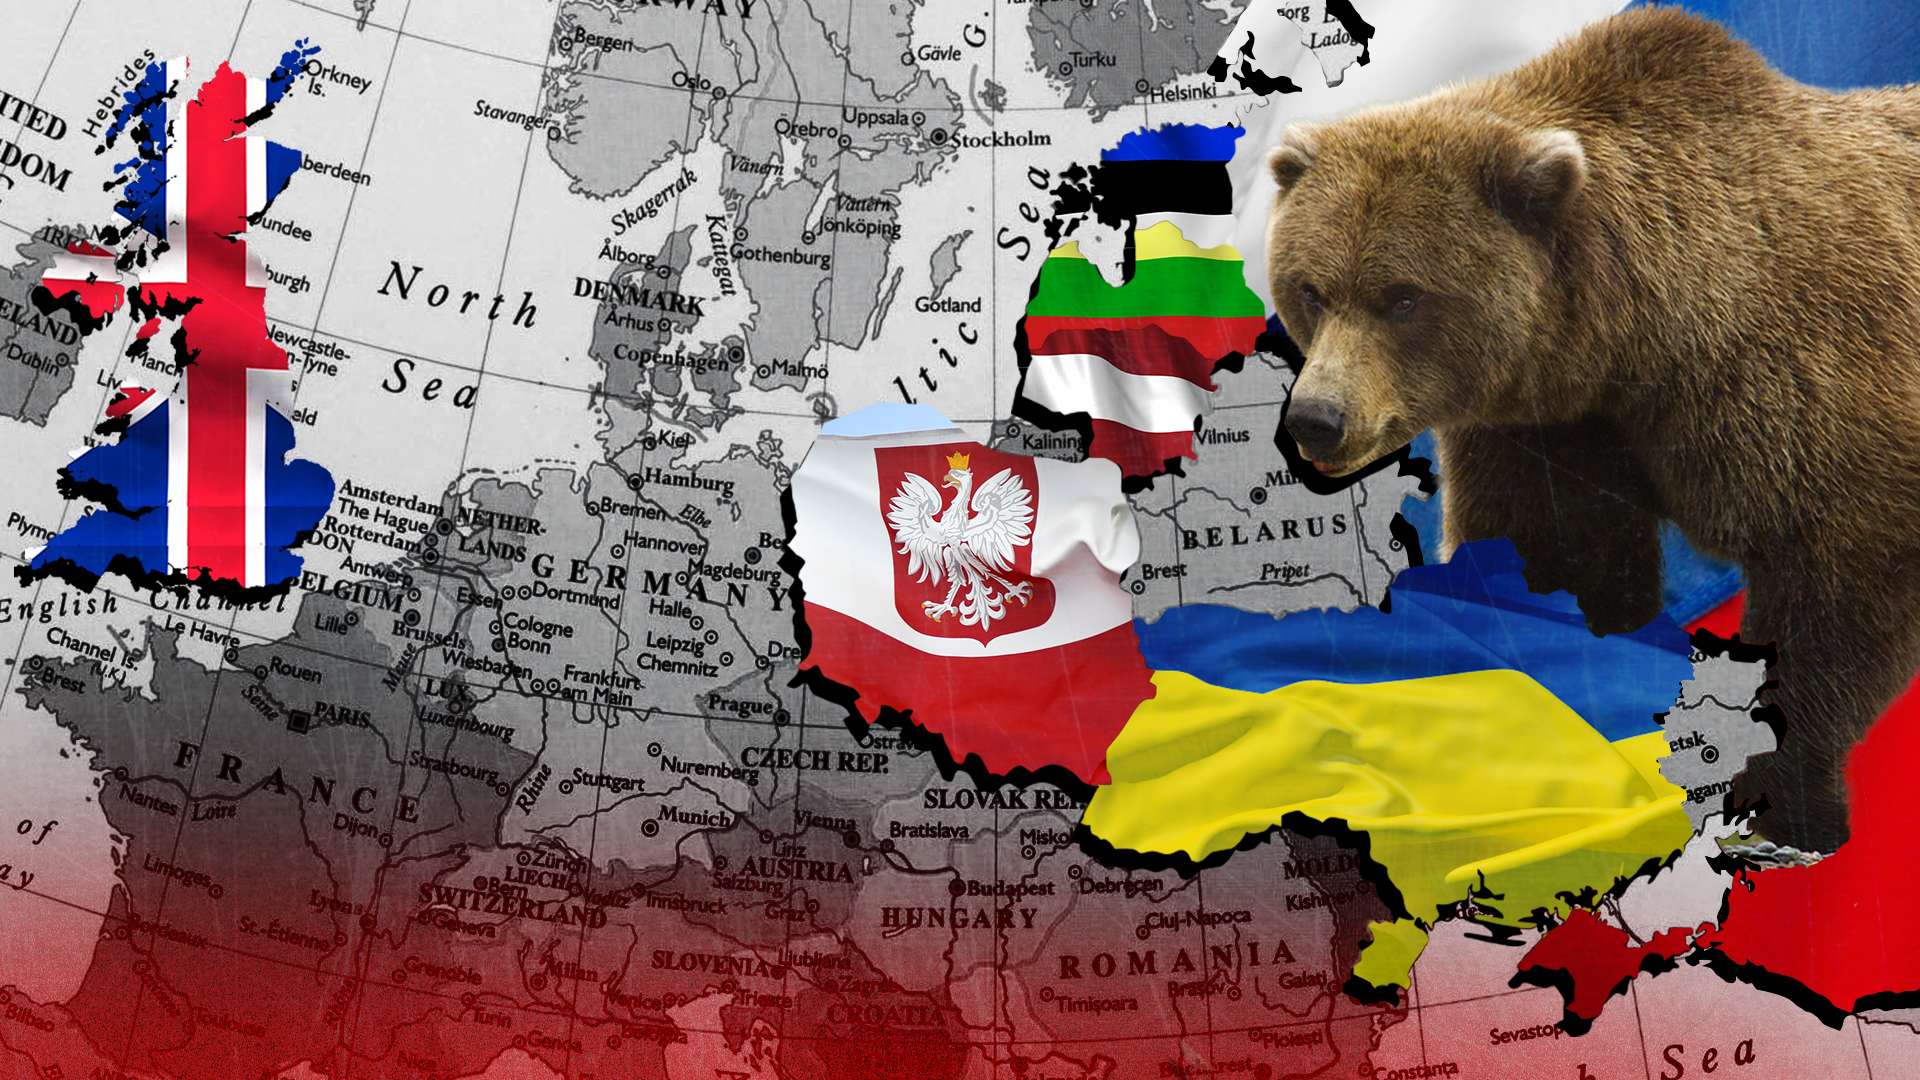 Россия против Украины